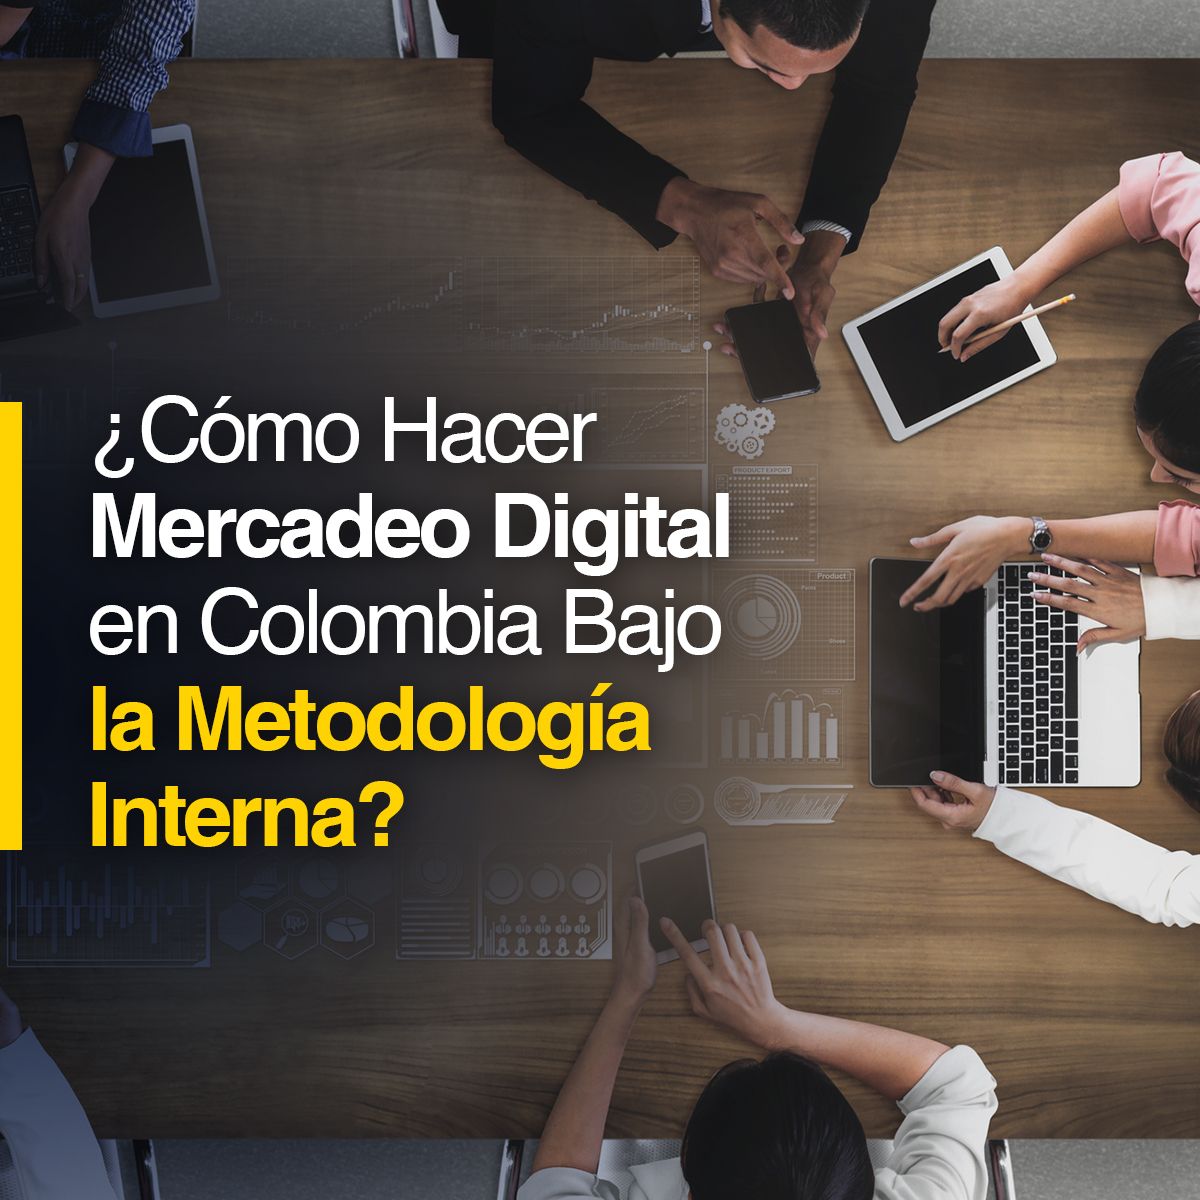 ¿Cómo Hacer Mercadeo Digital en Colombia Bajo la Metodología Interna?